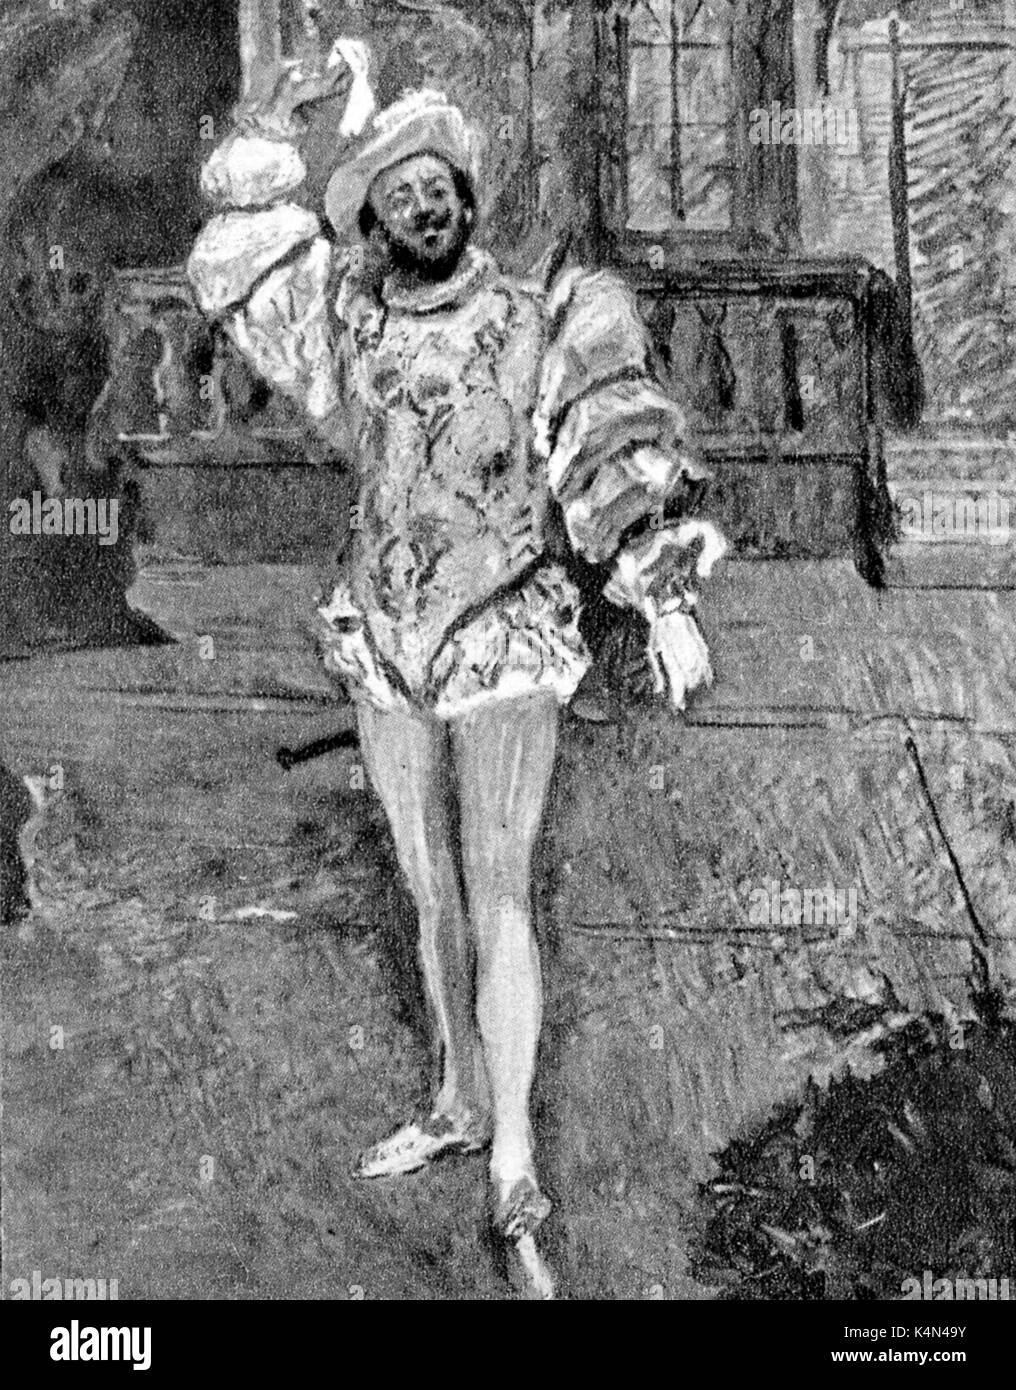 Francisco d'Andrade comme Don Giovanni à l'opéra de Mozart. Par Max Slevogt. Le baryton portugais 1859-1921. Banque D'Images